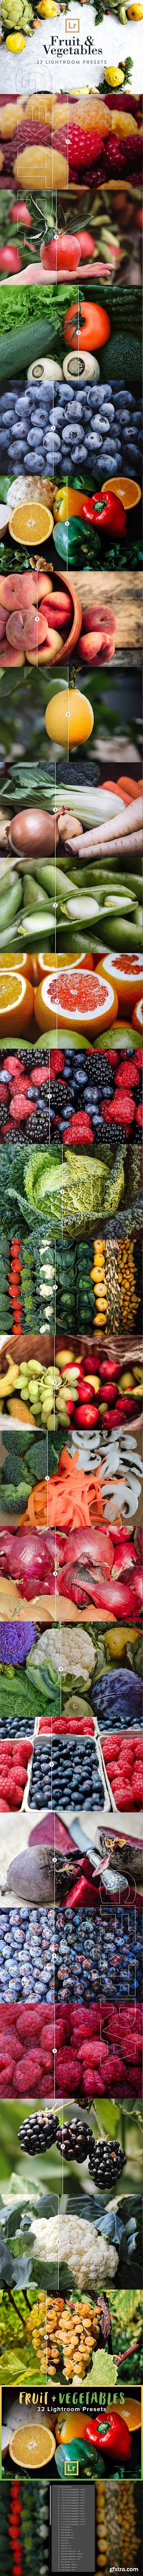 CreativeMarket - Fruit & Vegetables Lightroom Presets 2532992